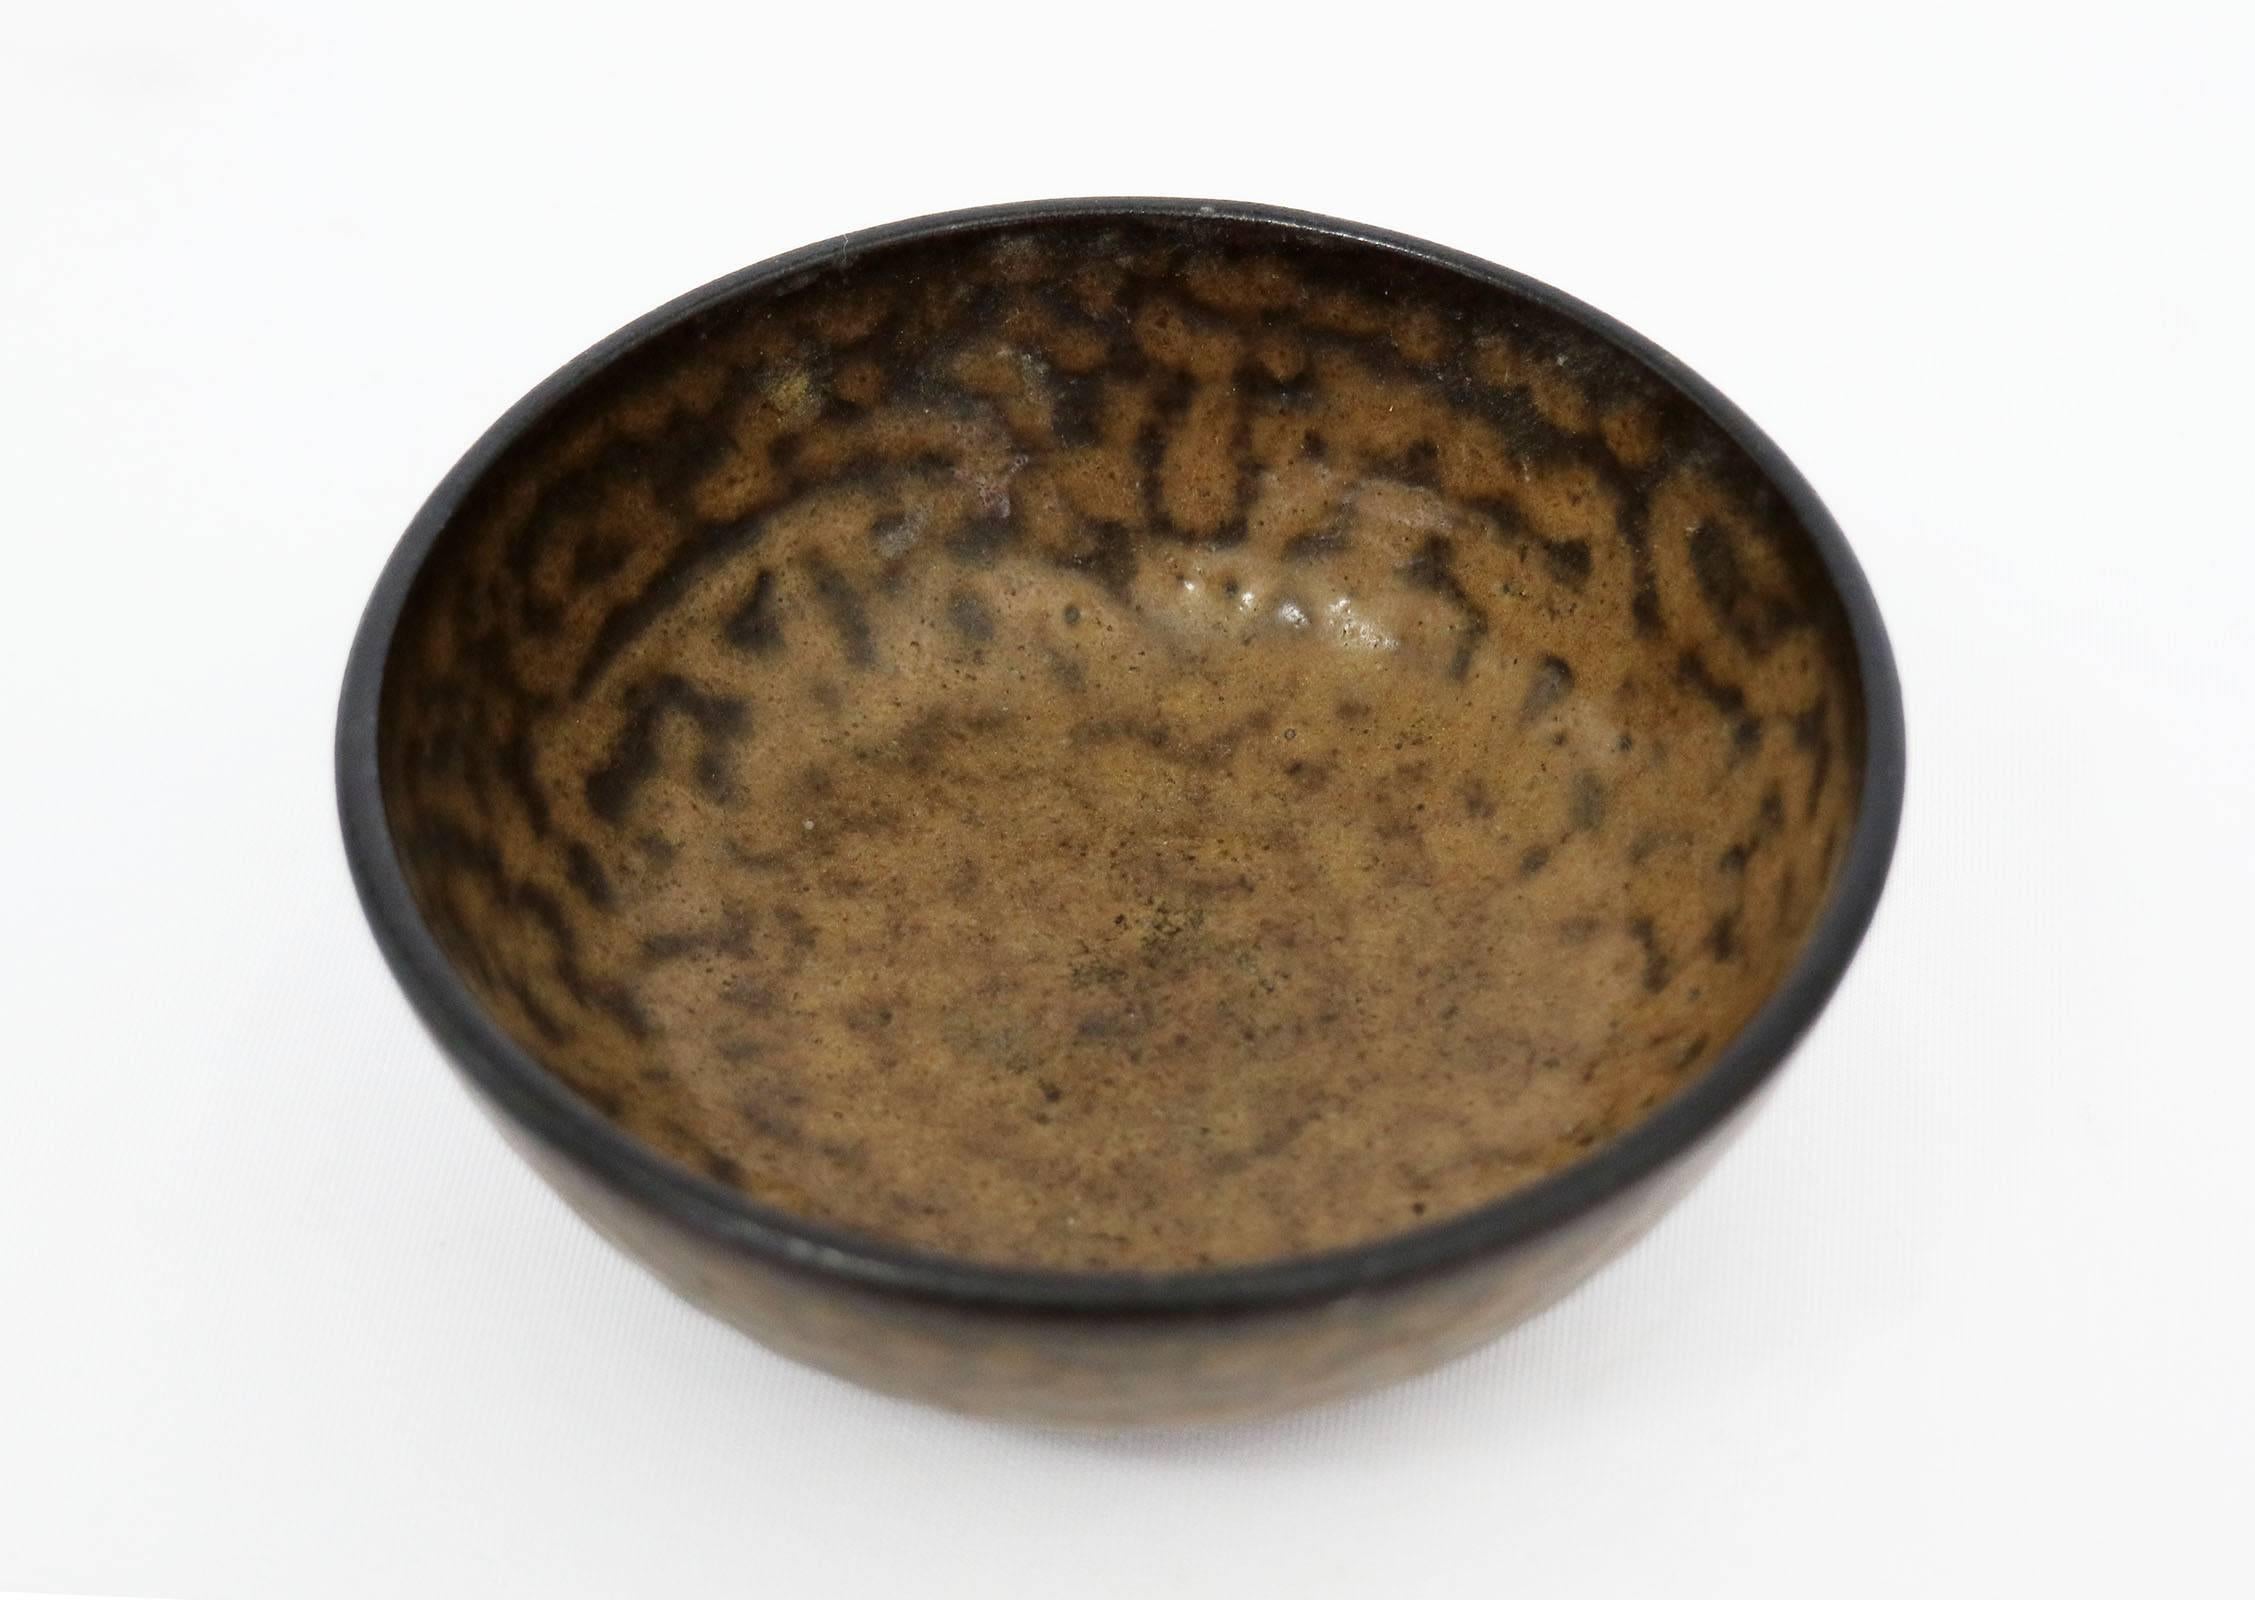 Glazed Ceramic bowl, stamped on underside Holland.